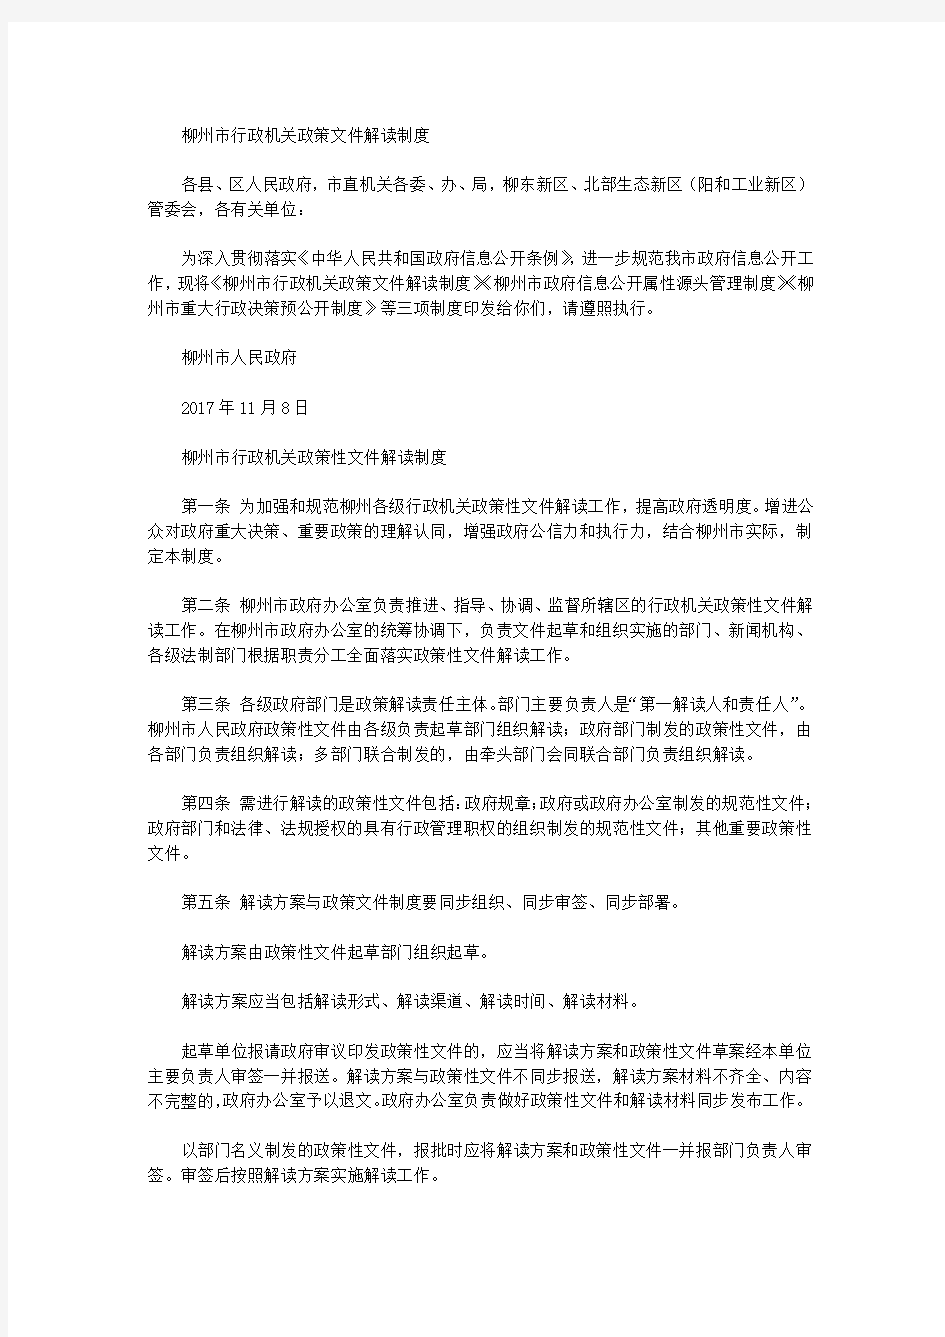 柳州市行政机关政策文件解读制度